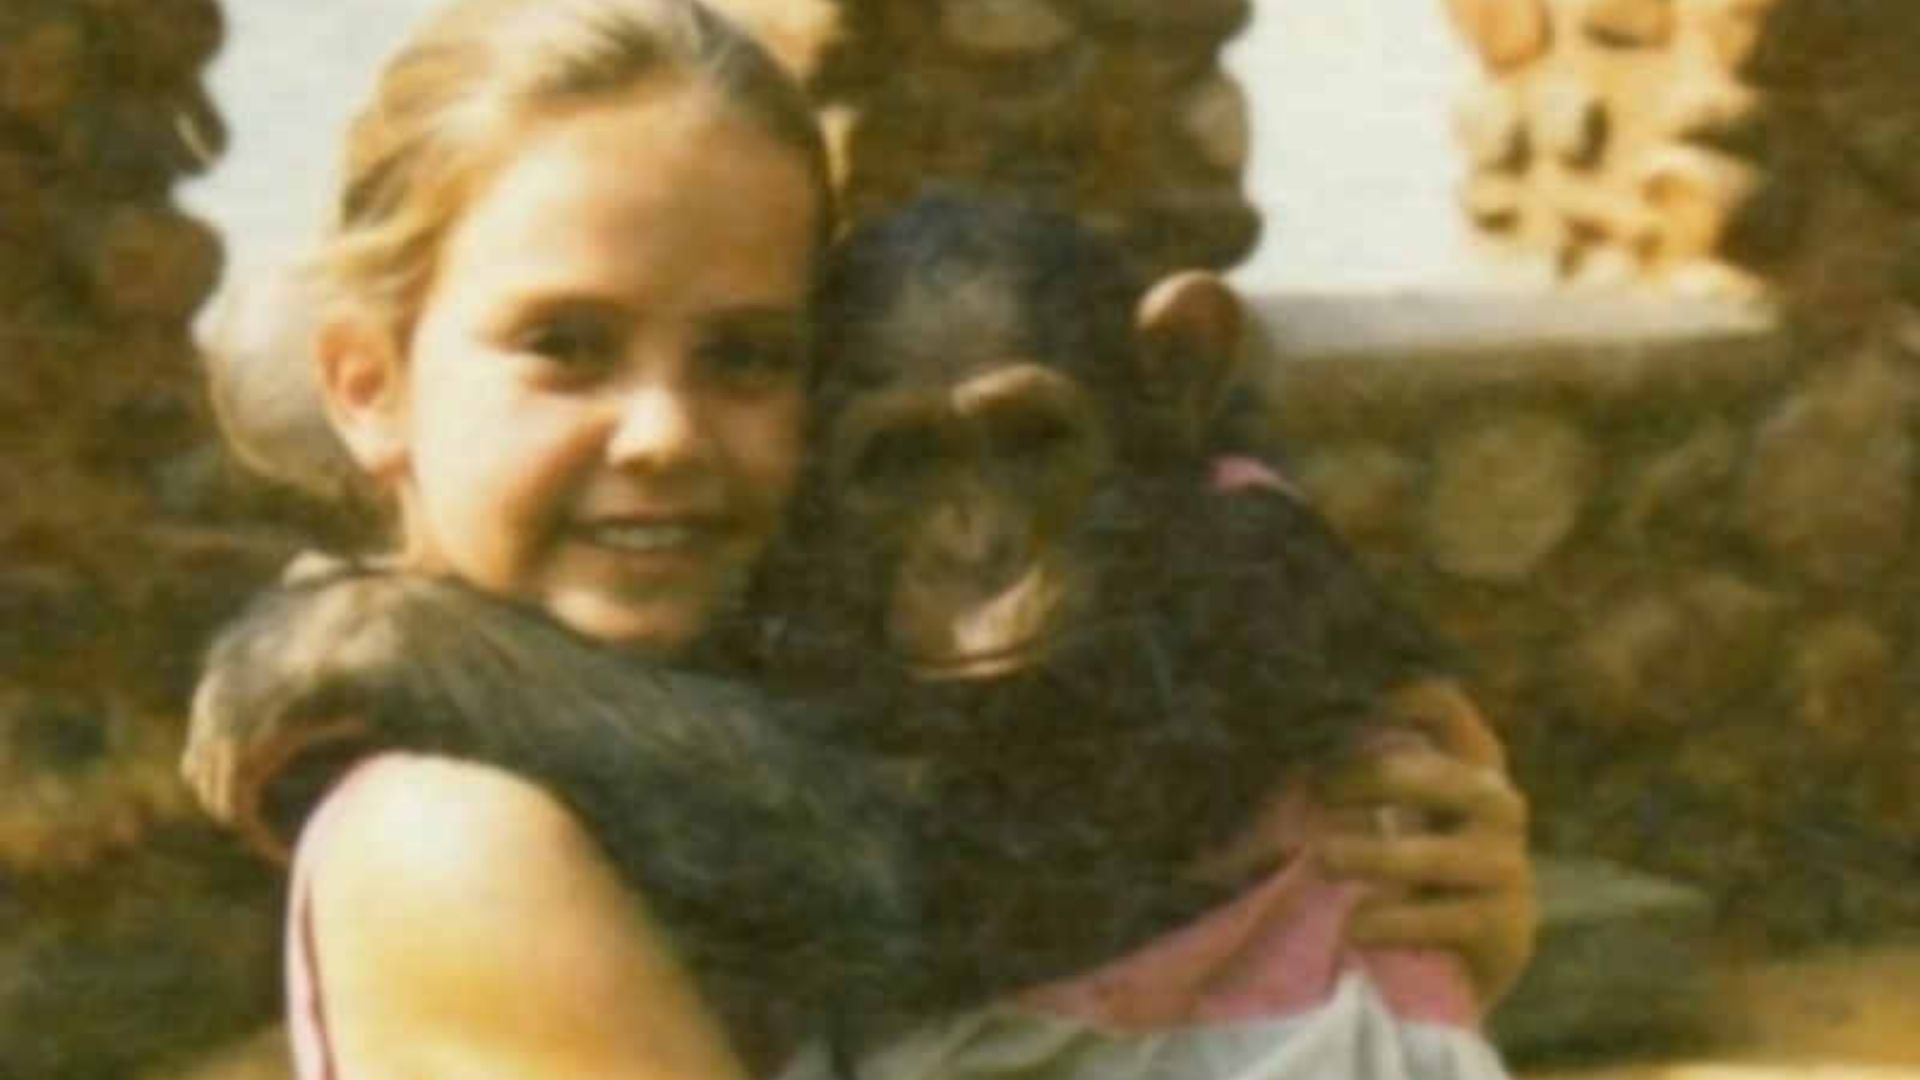 Avete riconosciuto questa biondina con la scimmietta in braccio? Oggi l’attrice premio Oscar ha 45 anni ed è una delle donne più sexy e talentuose di Hollywood